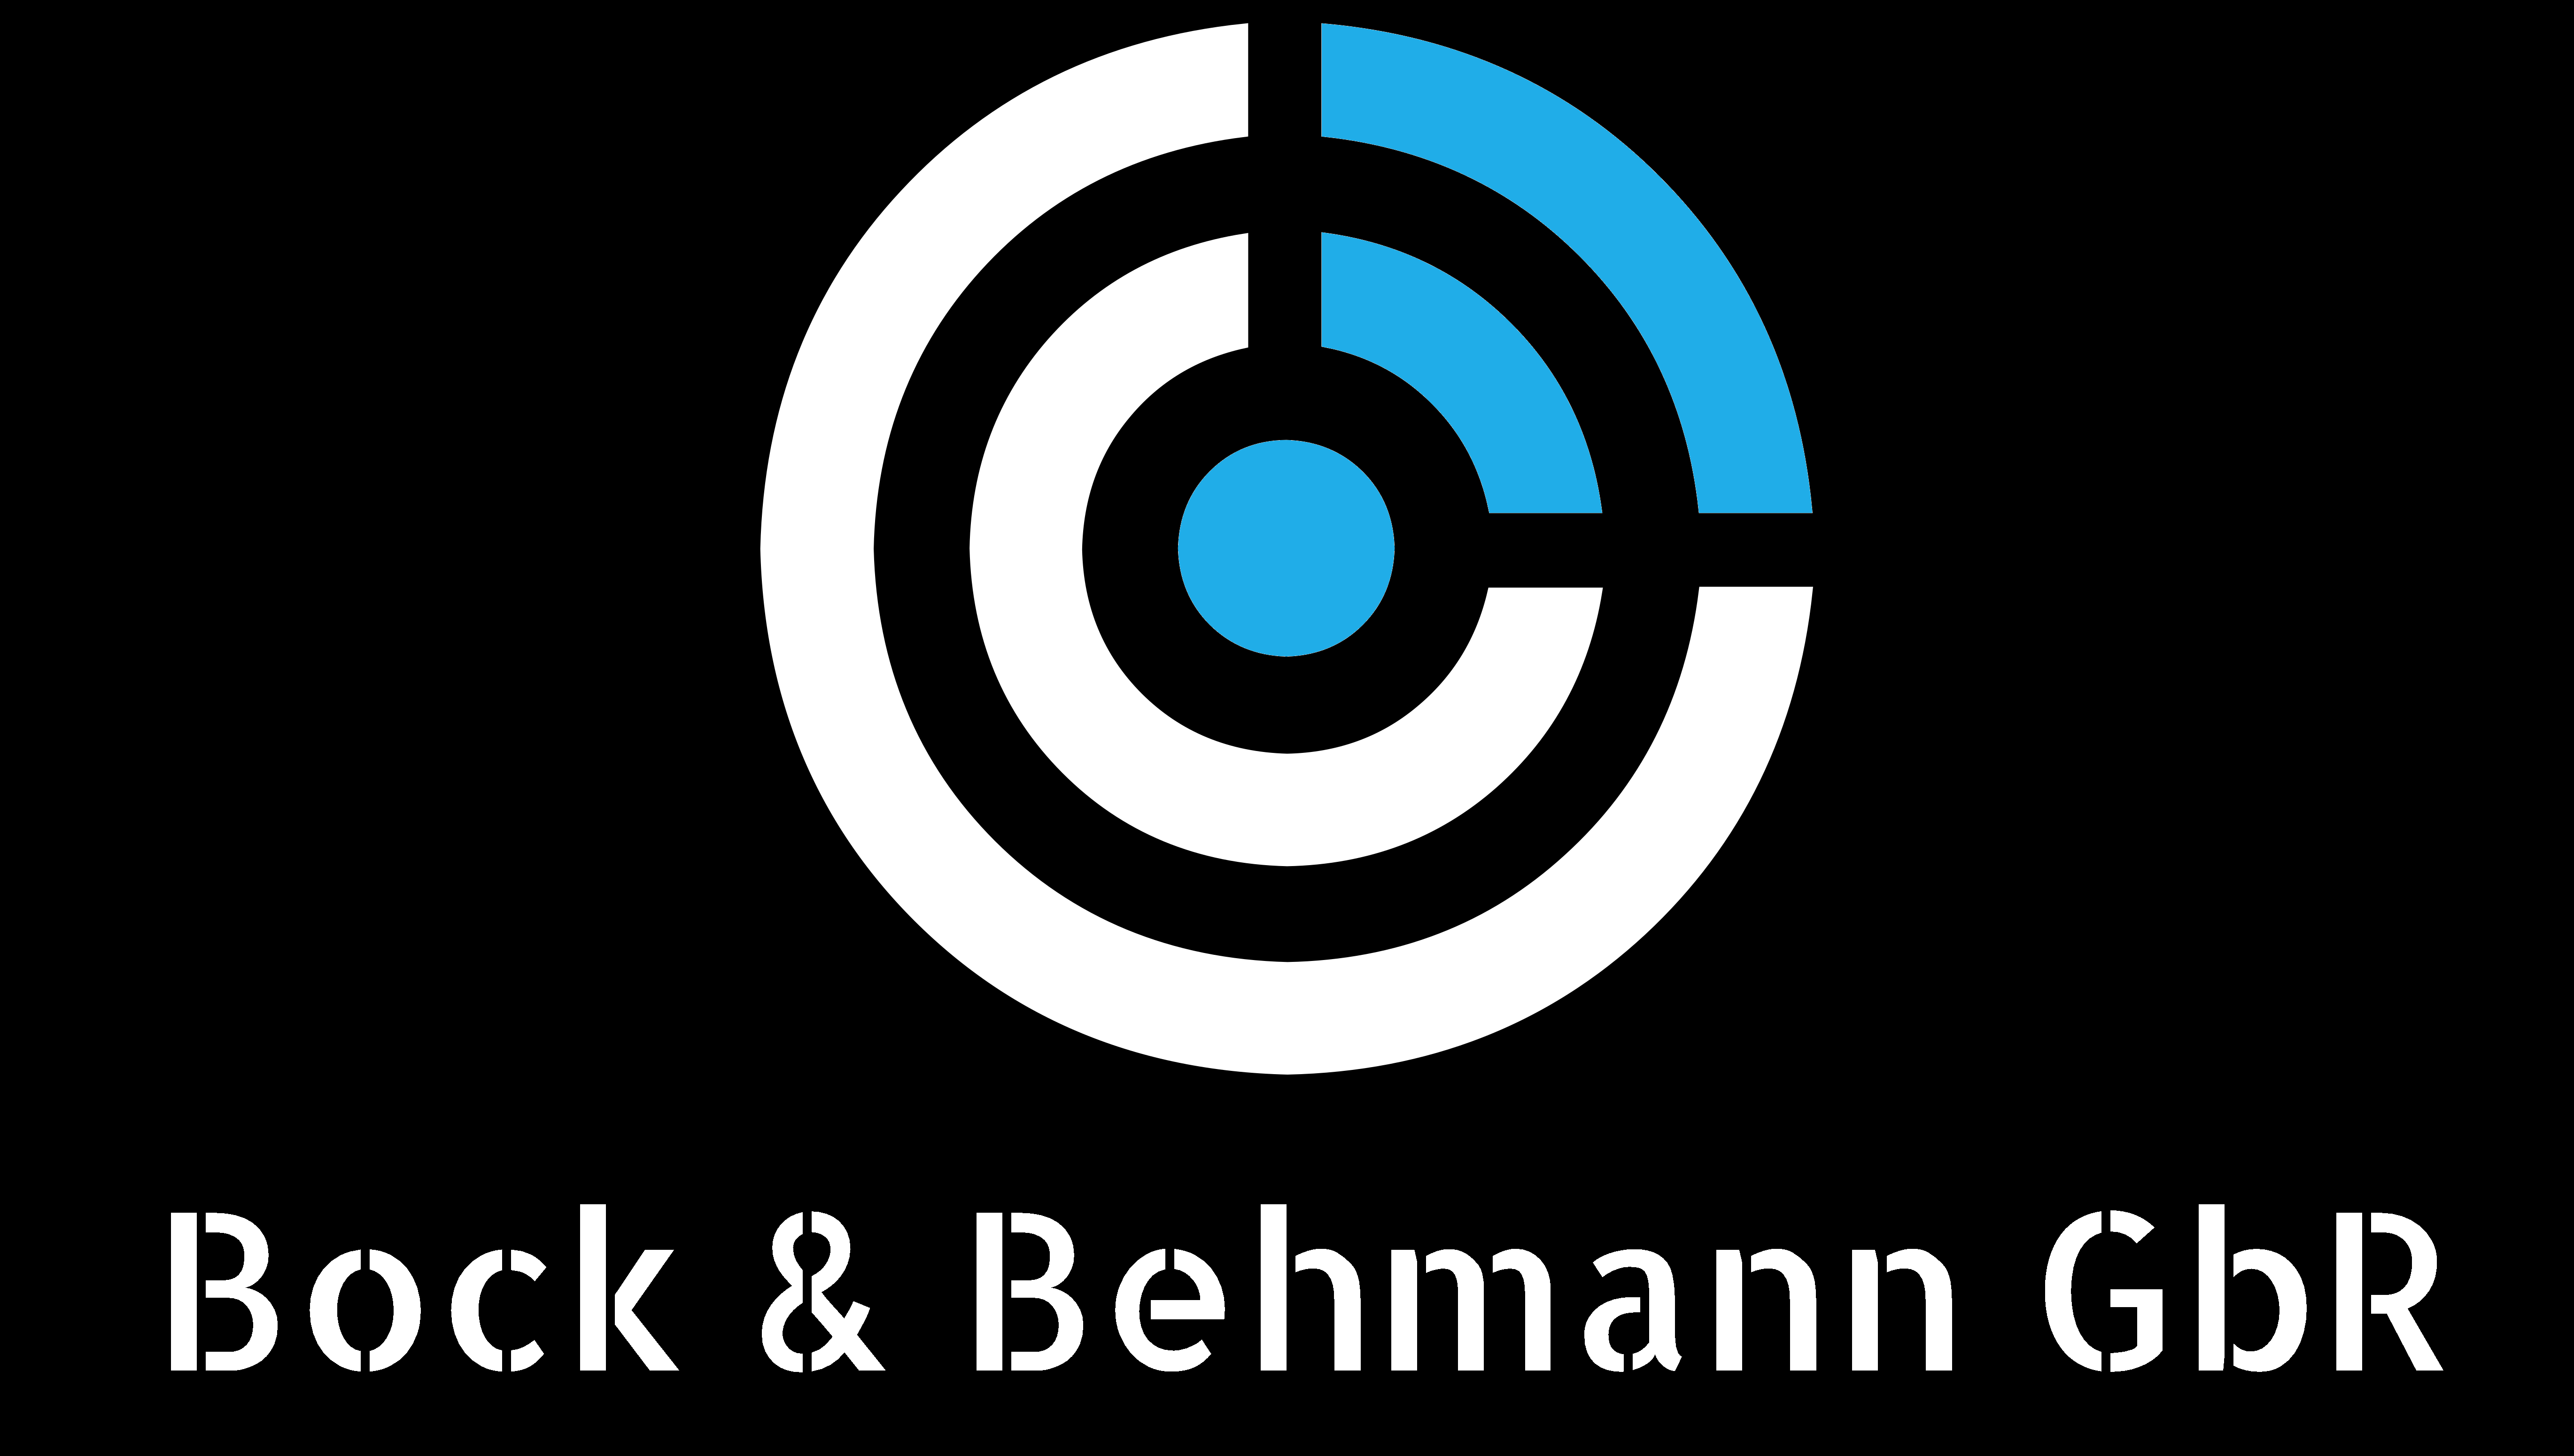 Bock & Behmann GbR - IT-Dienstleister und IT-Handel